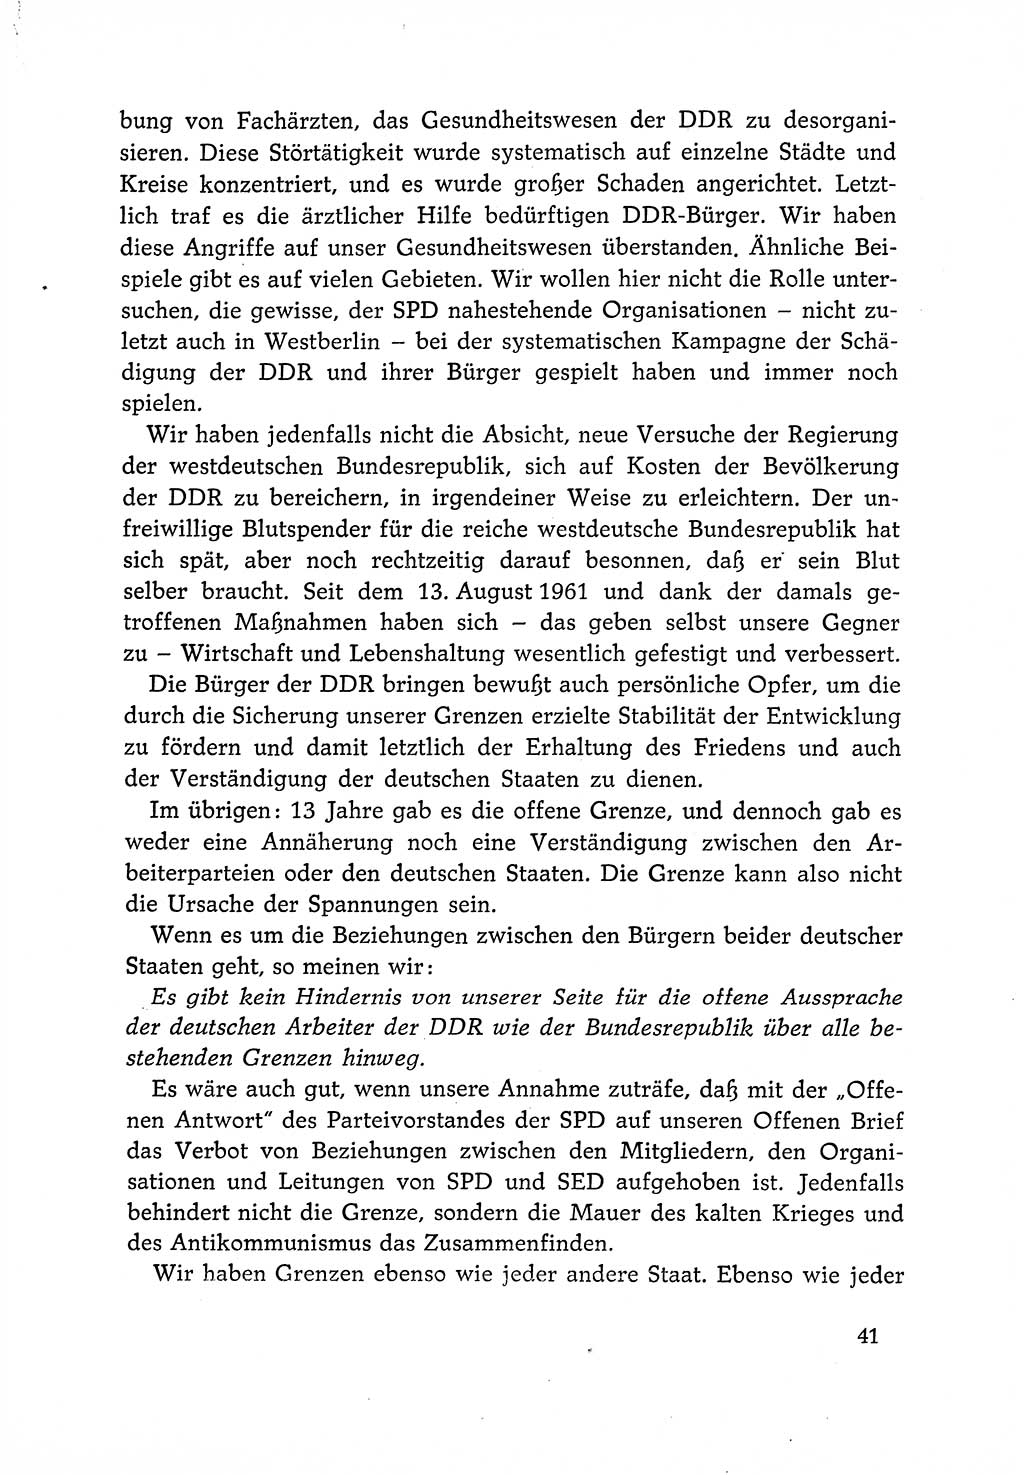 Dokumente der Sozialistischen Einheitspartei Deutschlands (SED) [Deutsche Demokratische Republik (DDR)] 1966-1967, Seite 41 (Dok. SED DDR 1966-1967, S. 41)